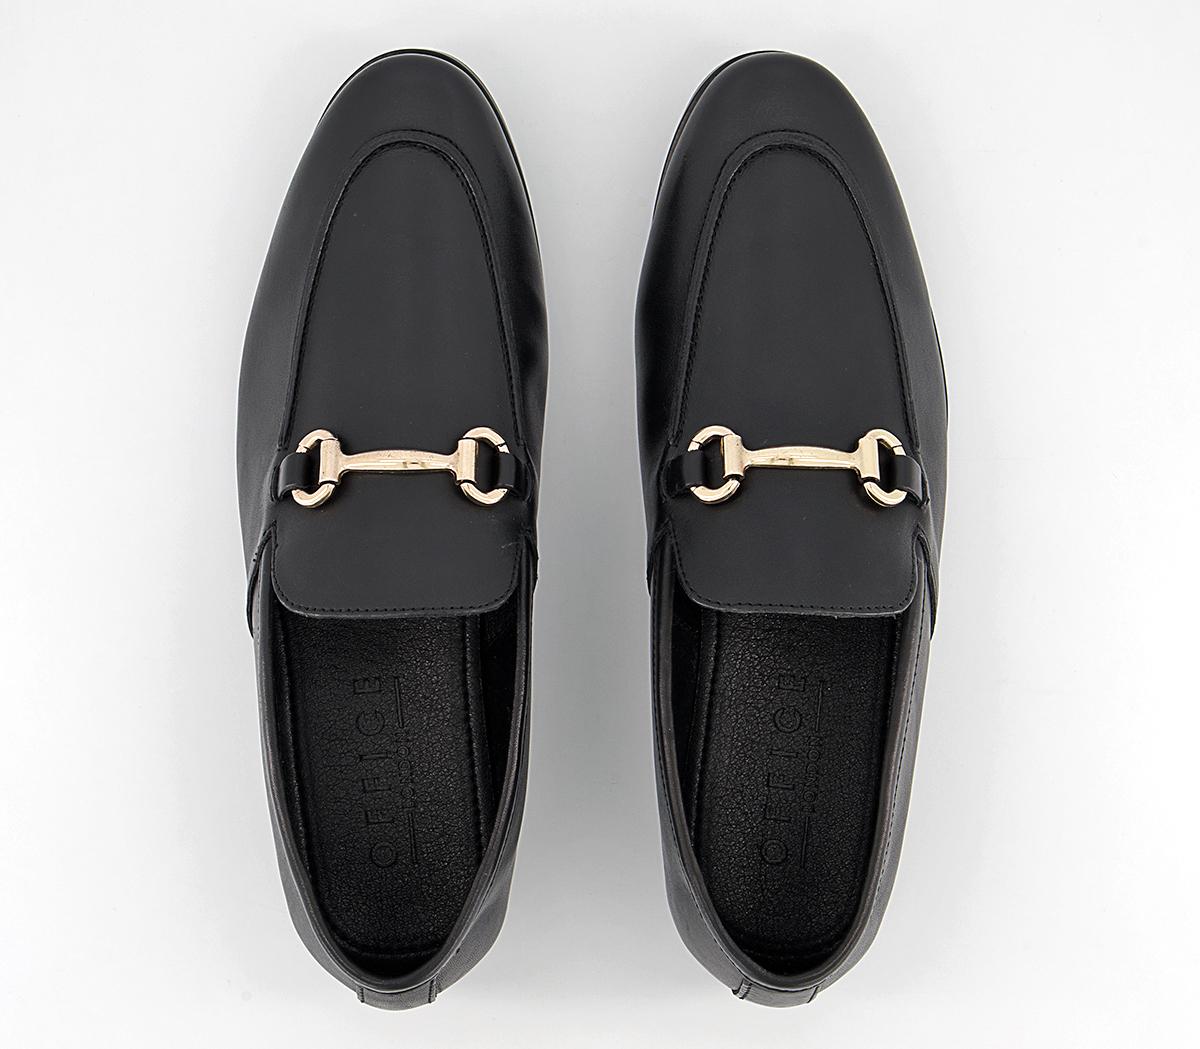 OFFICE Lemming 2 Shoes Black Leather - Men’s Smart Shoes